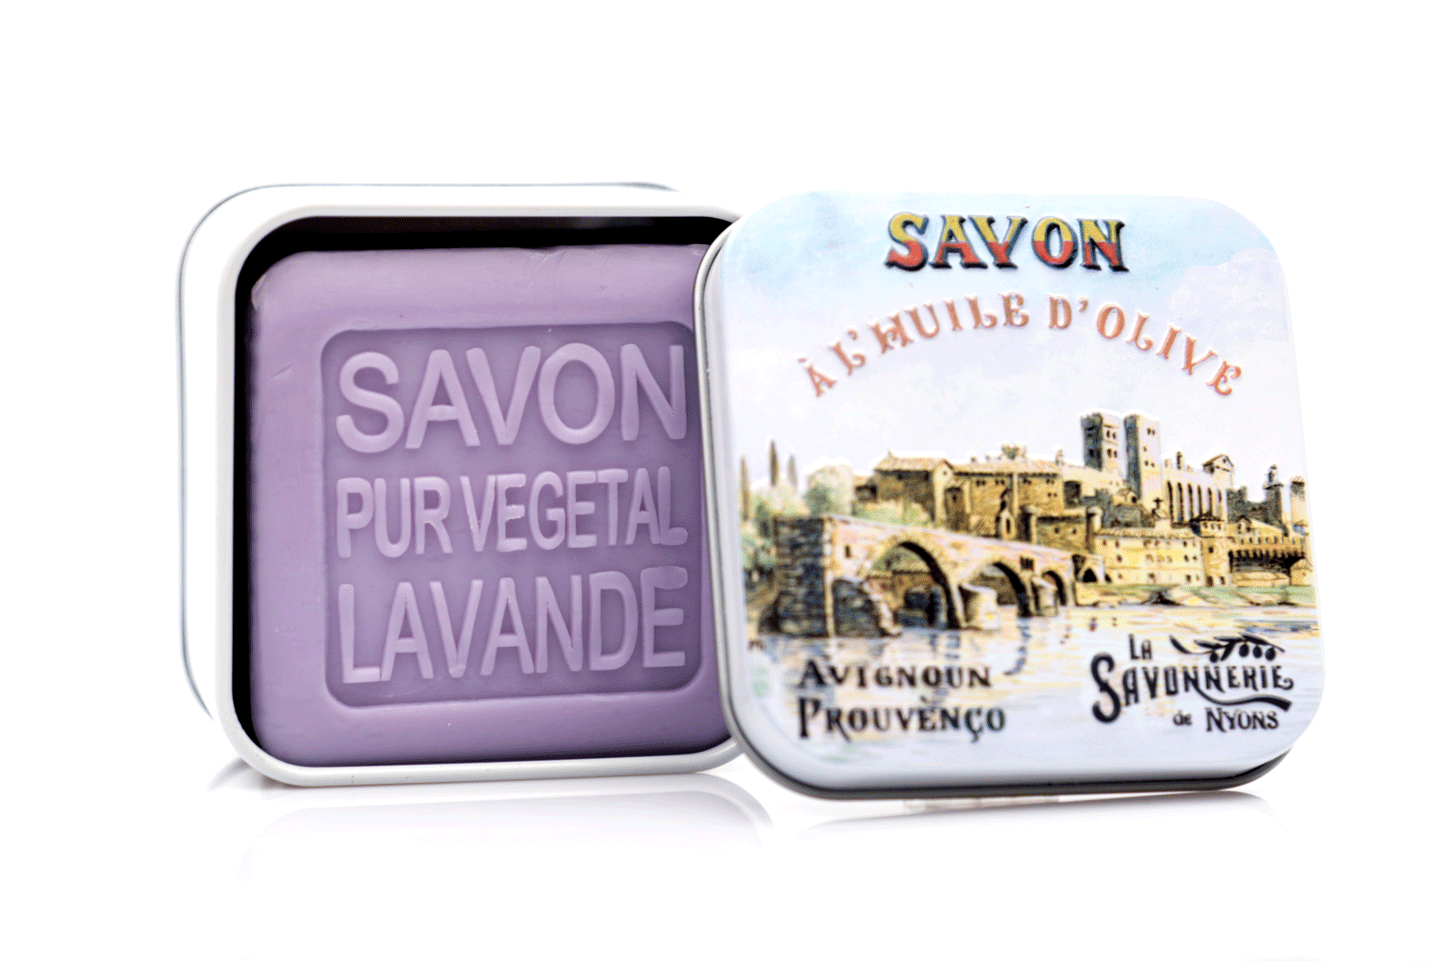 Sapun in cutie metalica, 100 g - Pont d\'Avignon | La Savonnerie de Nyons